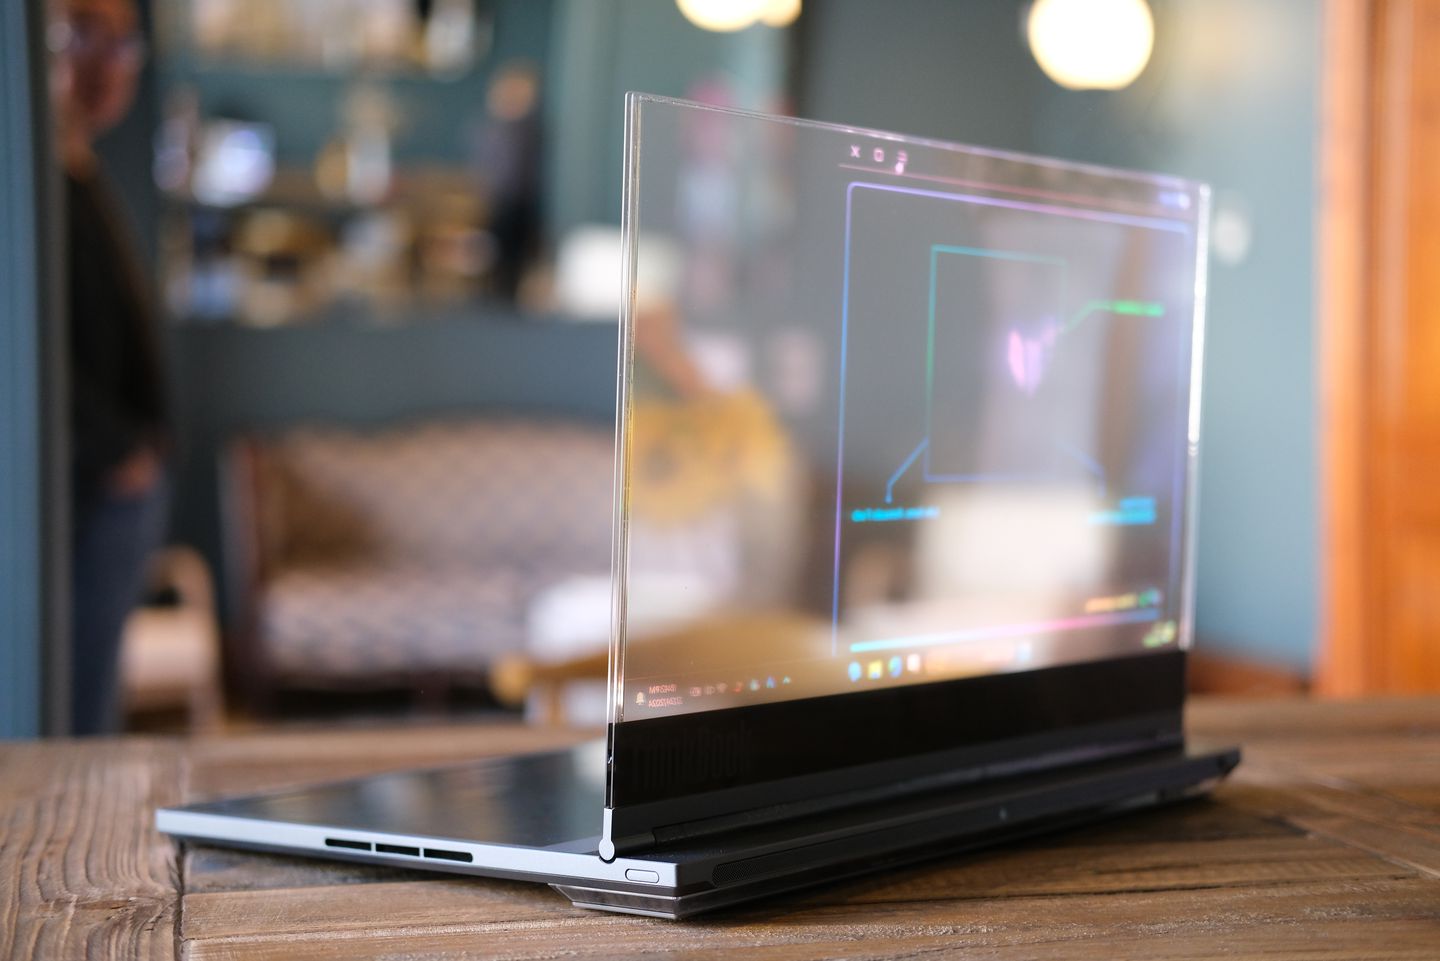 Chiếc laptop ảo diệu nhất thế giới vừa được trình làng, màn hình trong suốt có thể nhìn xuyên qua!- Ảnh 2.